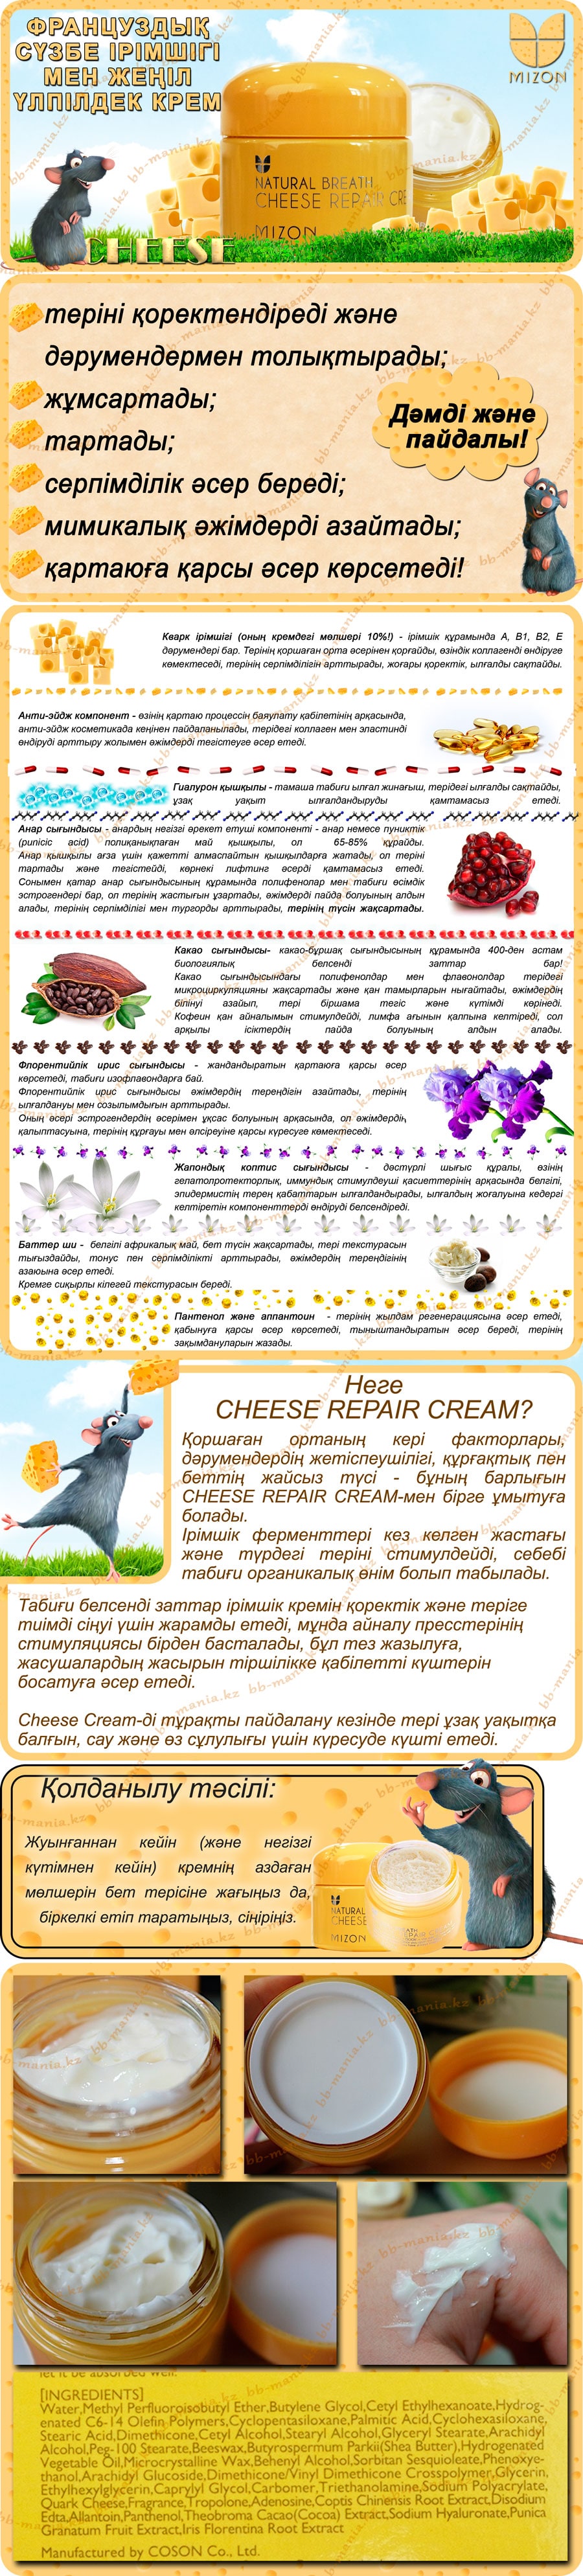 Cheese-Repair-Cream-[Mizon]-кз-min